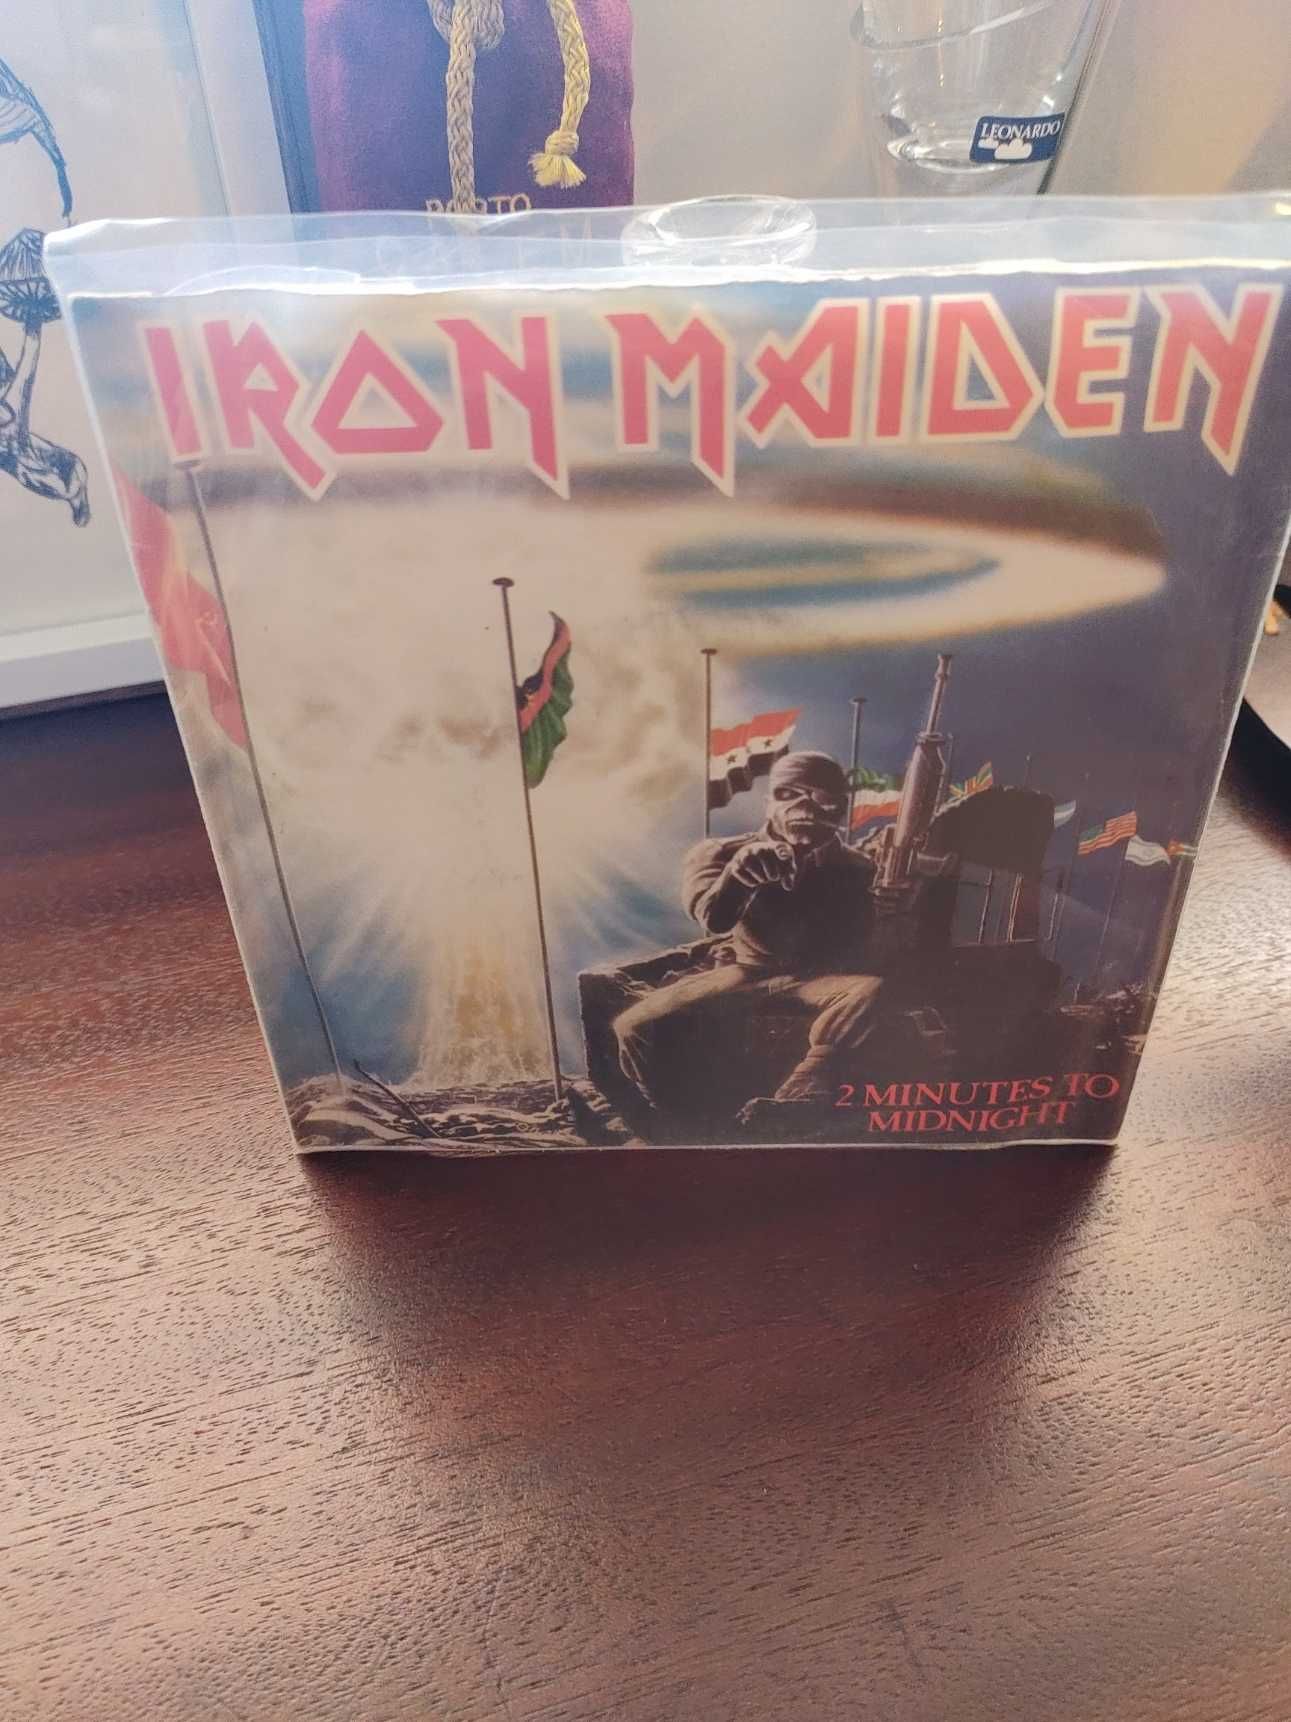 Iran Maiden | Single 7" | Colecionadores | VG+